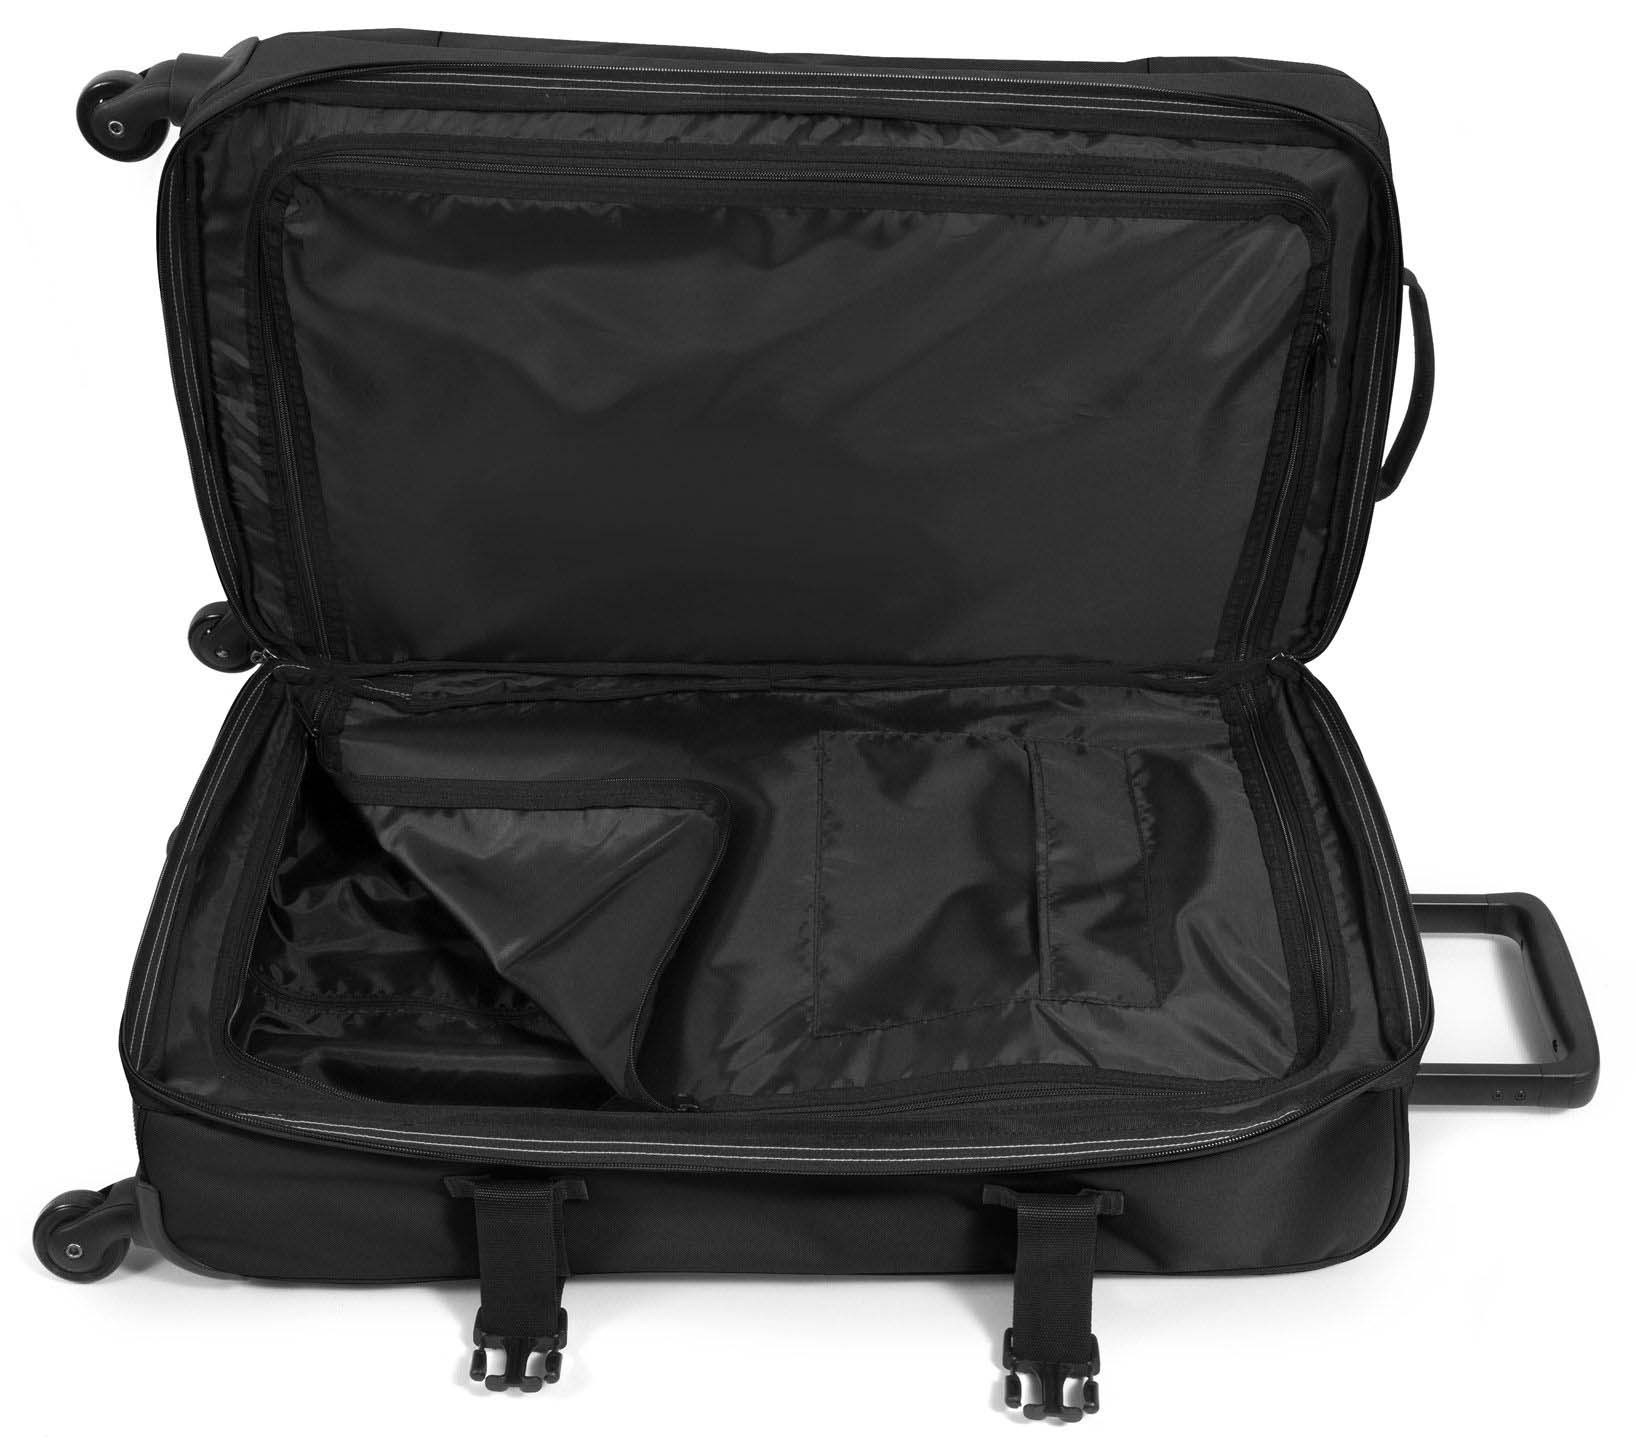 Eastpak Trans4 M 68 Litres Four Wheel Soft Suitcase